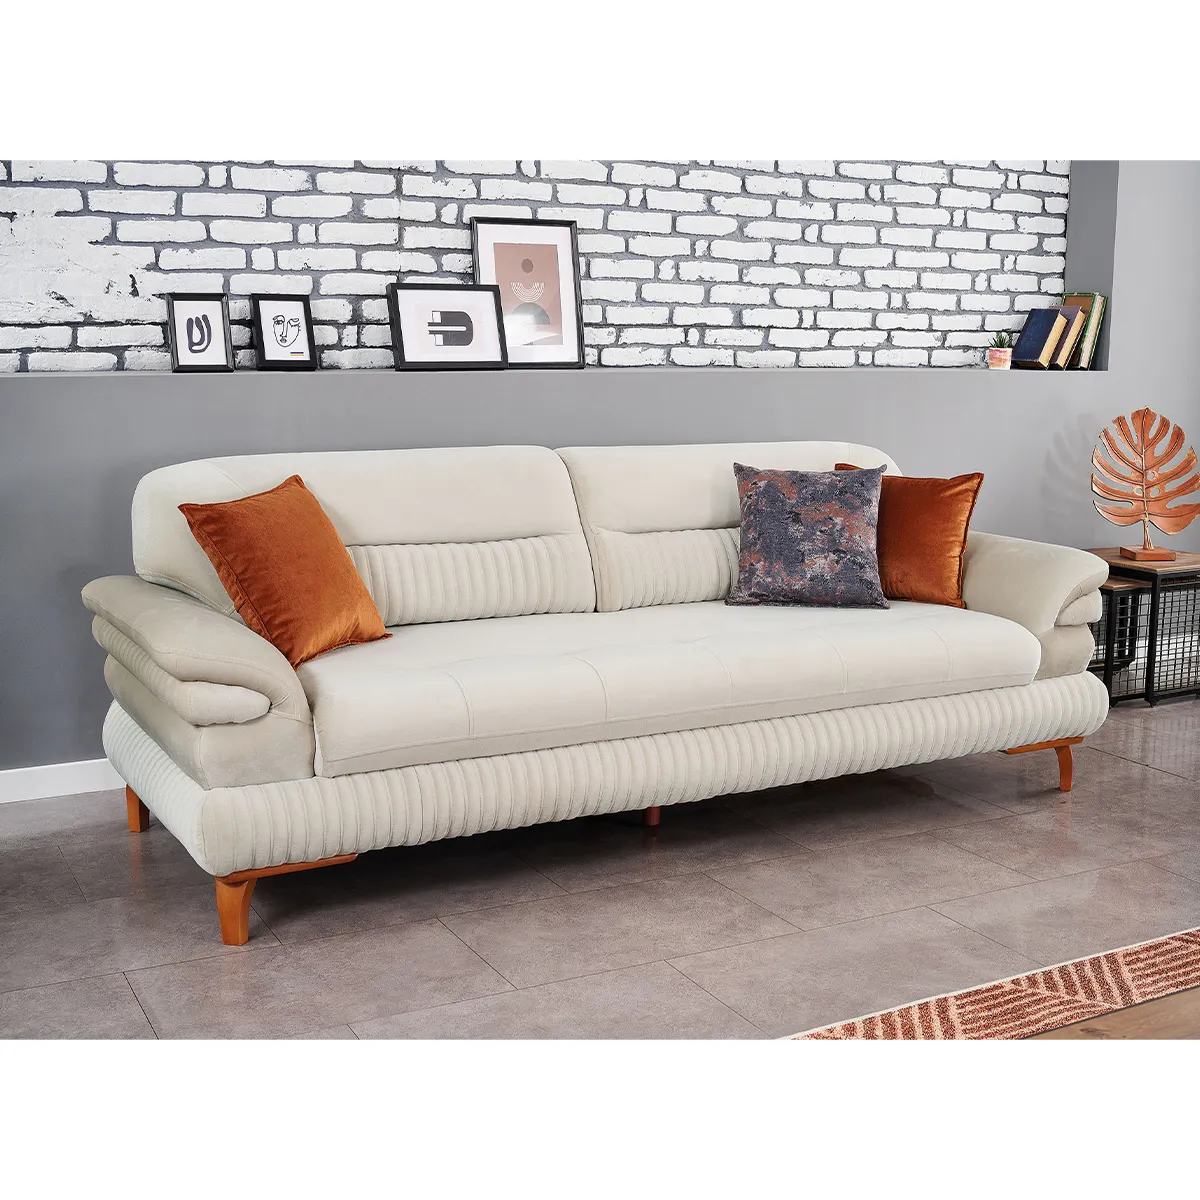 Home Living Room Furniture Sofa Sets New Design Elegant Home furniture designs Comfortable Sofa Set Furniture Living Room